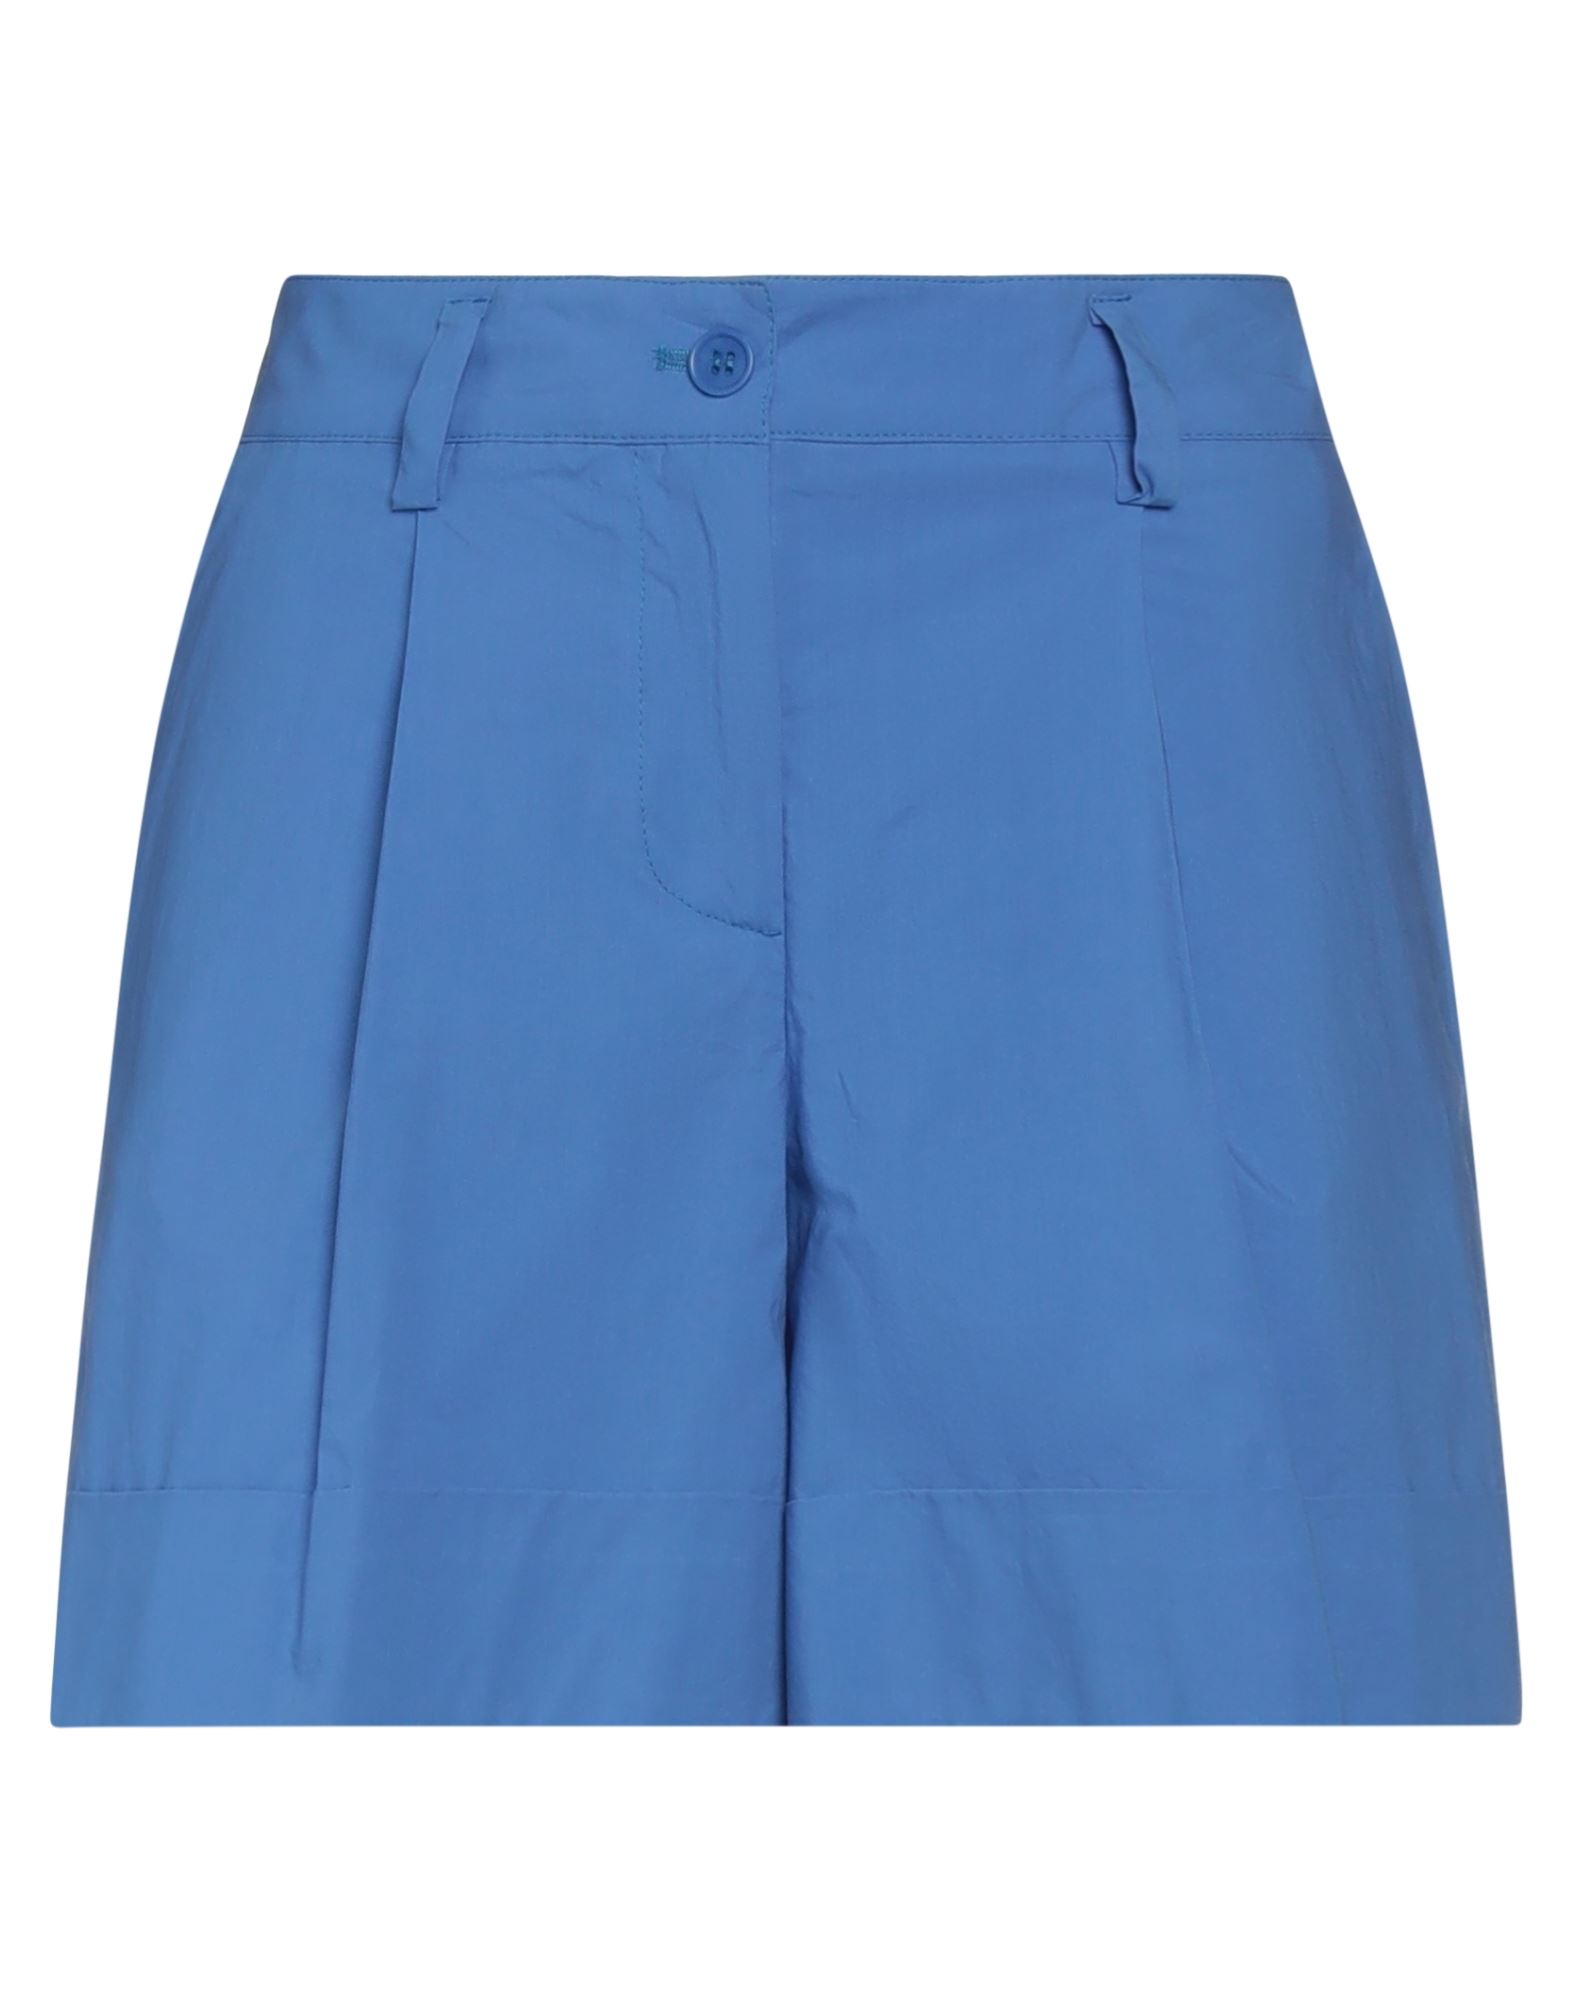 P.a.r.o.s.h P. A.r. O.s. H. Woman Shorts & Bermuda Shorts Blue Size Xs Cotton